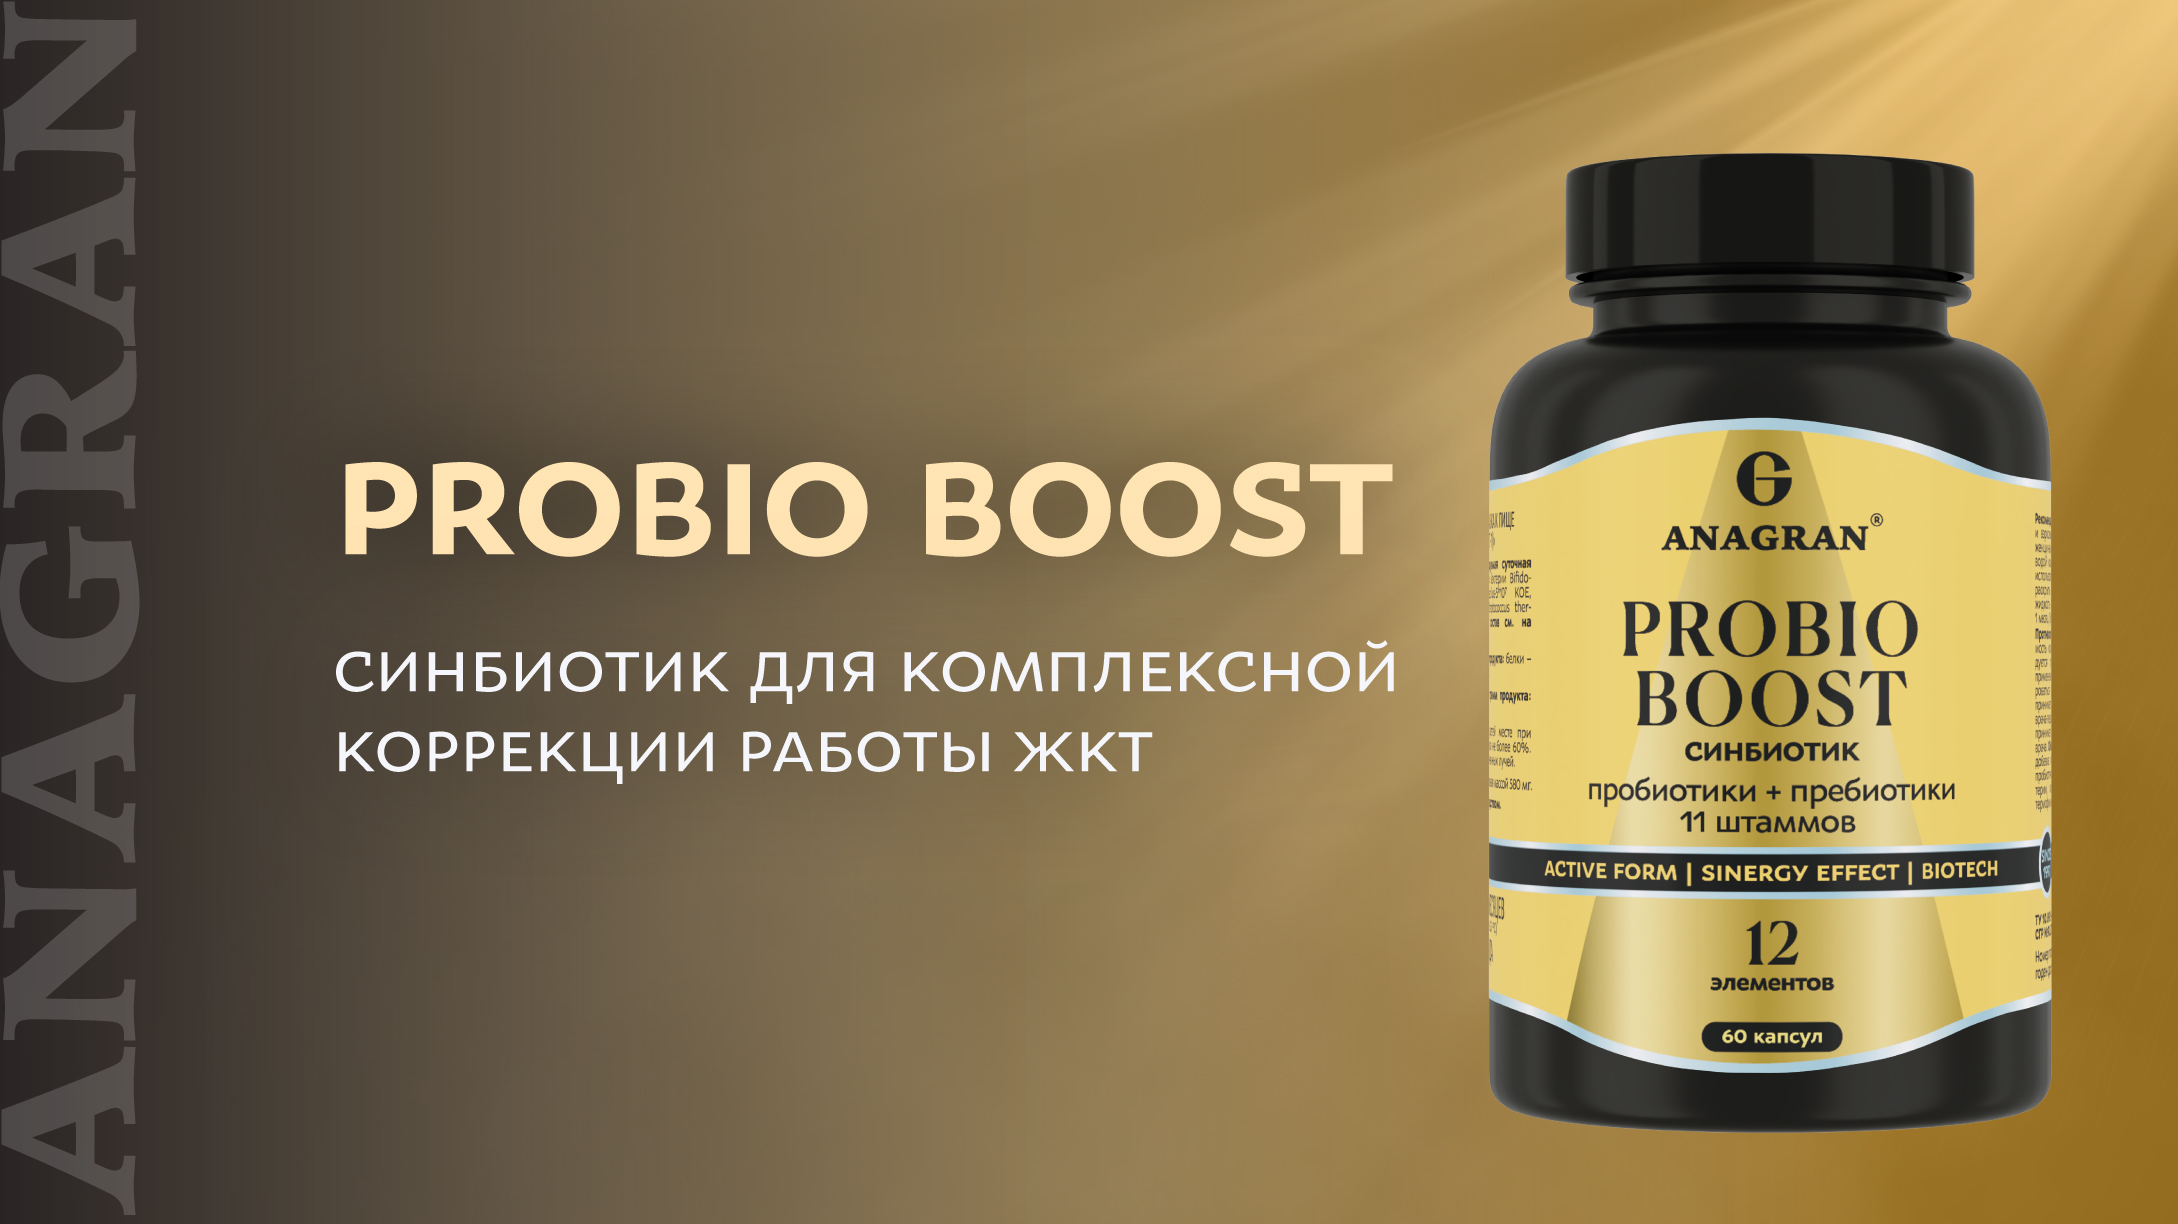 Probio Boost – синбиотик для комплексной коррекции работы ЖКТ